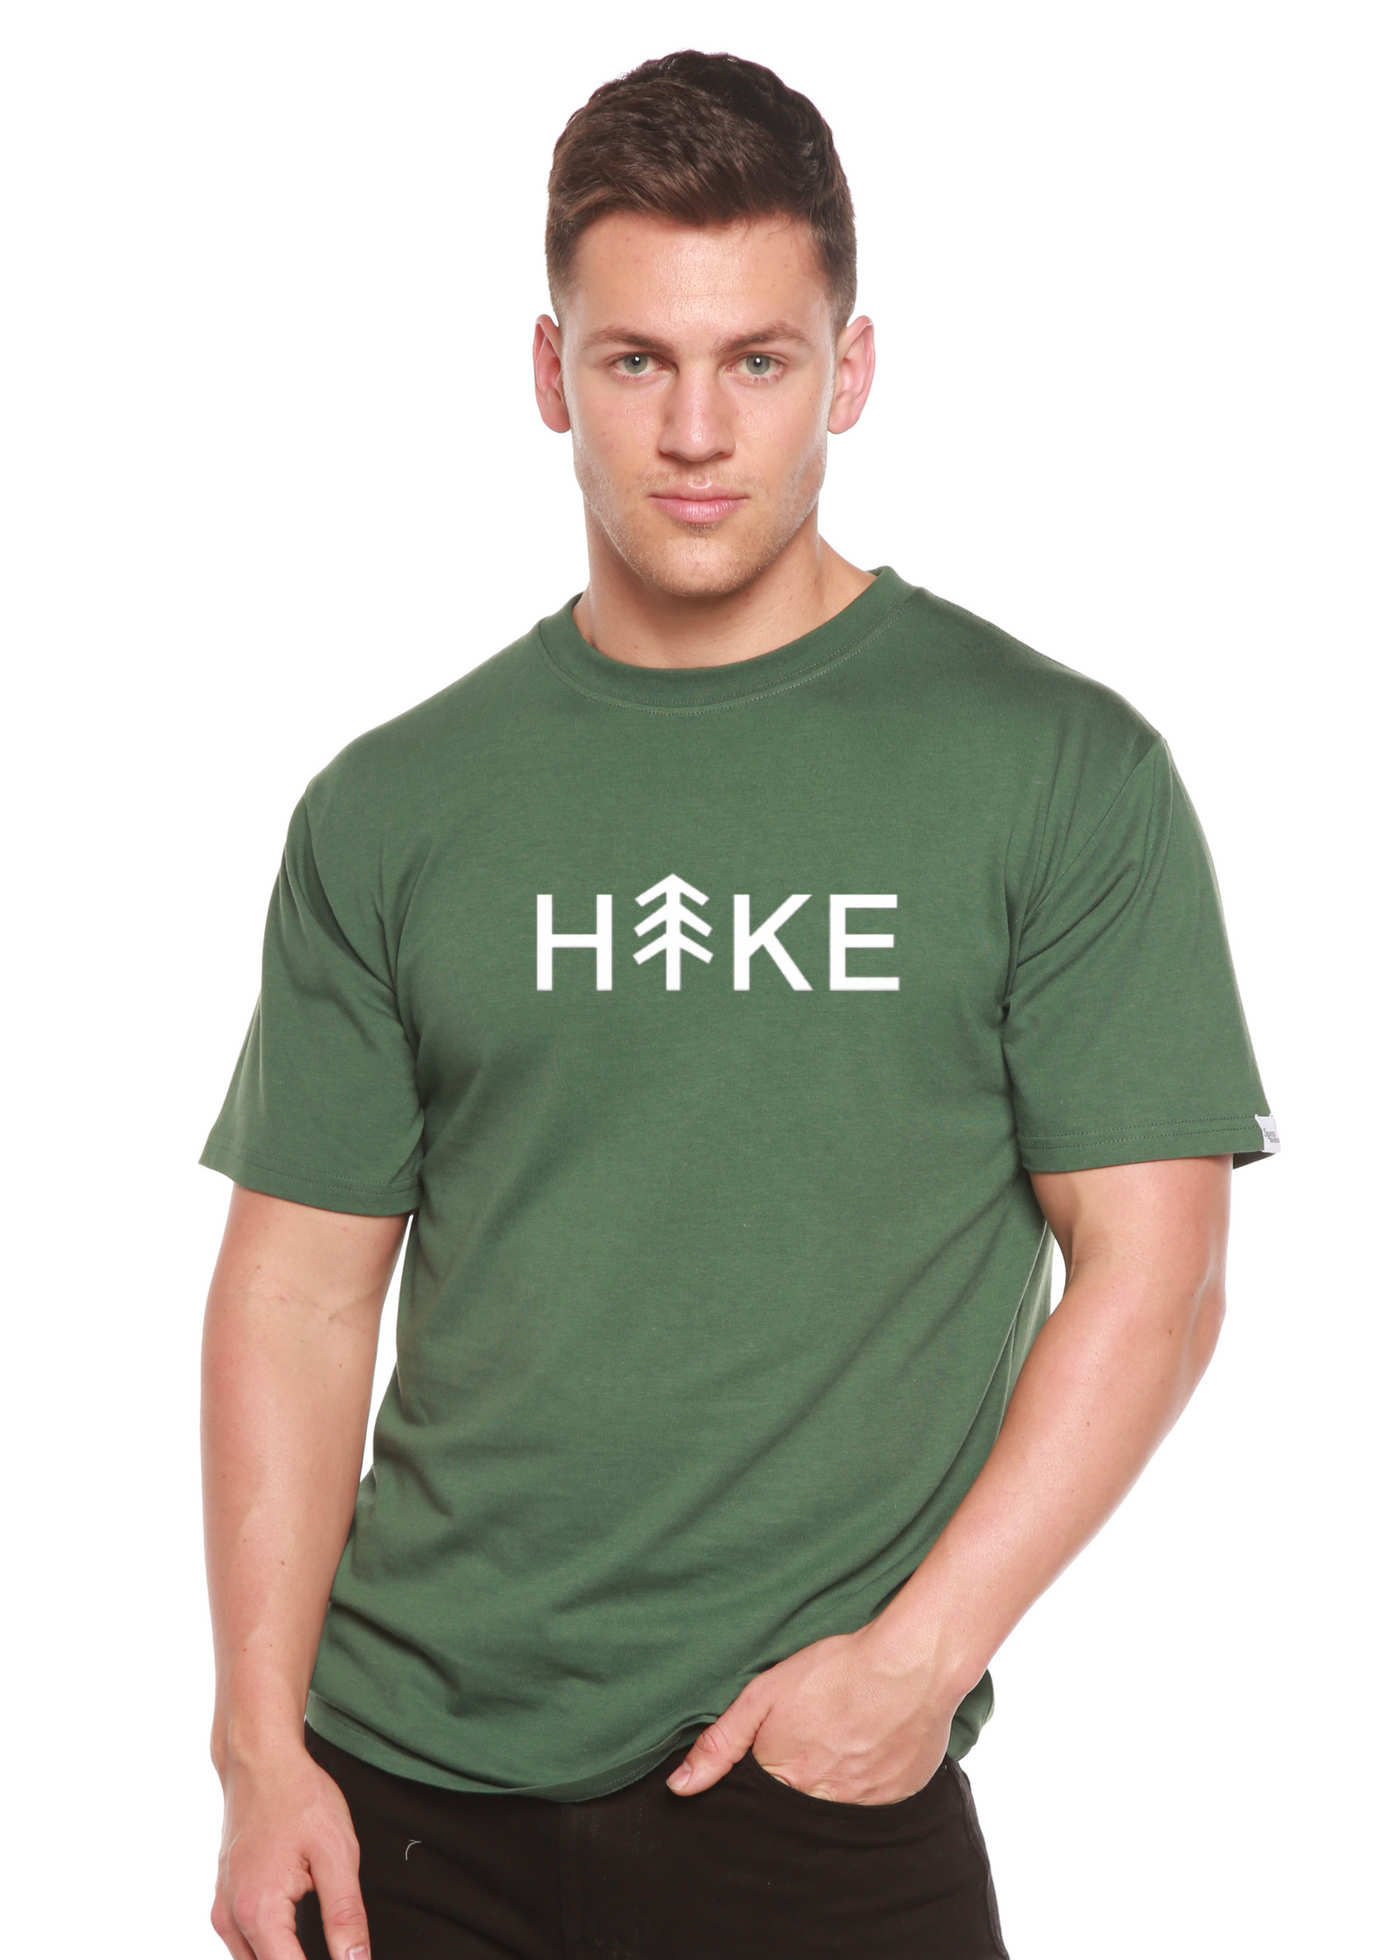 Hike Graphic Bamboo T-Shirt pine green